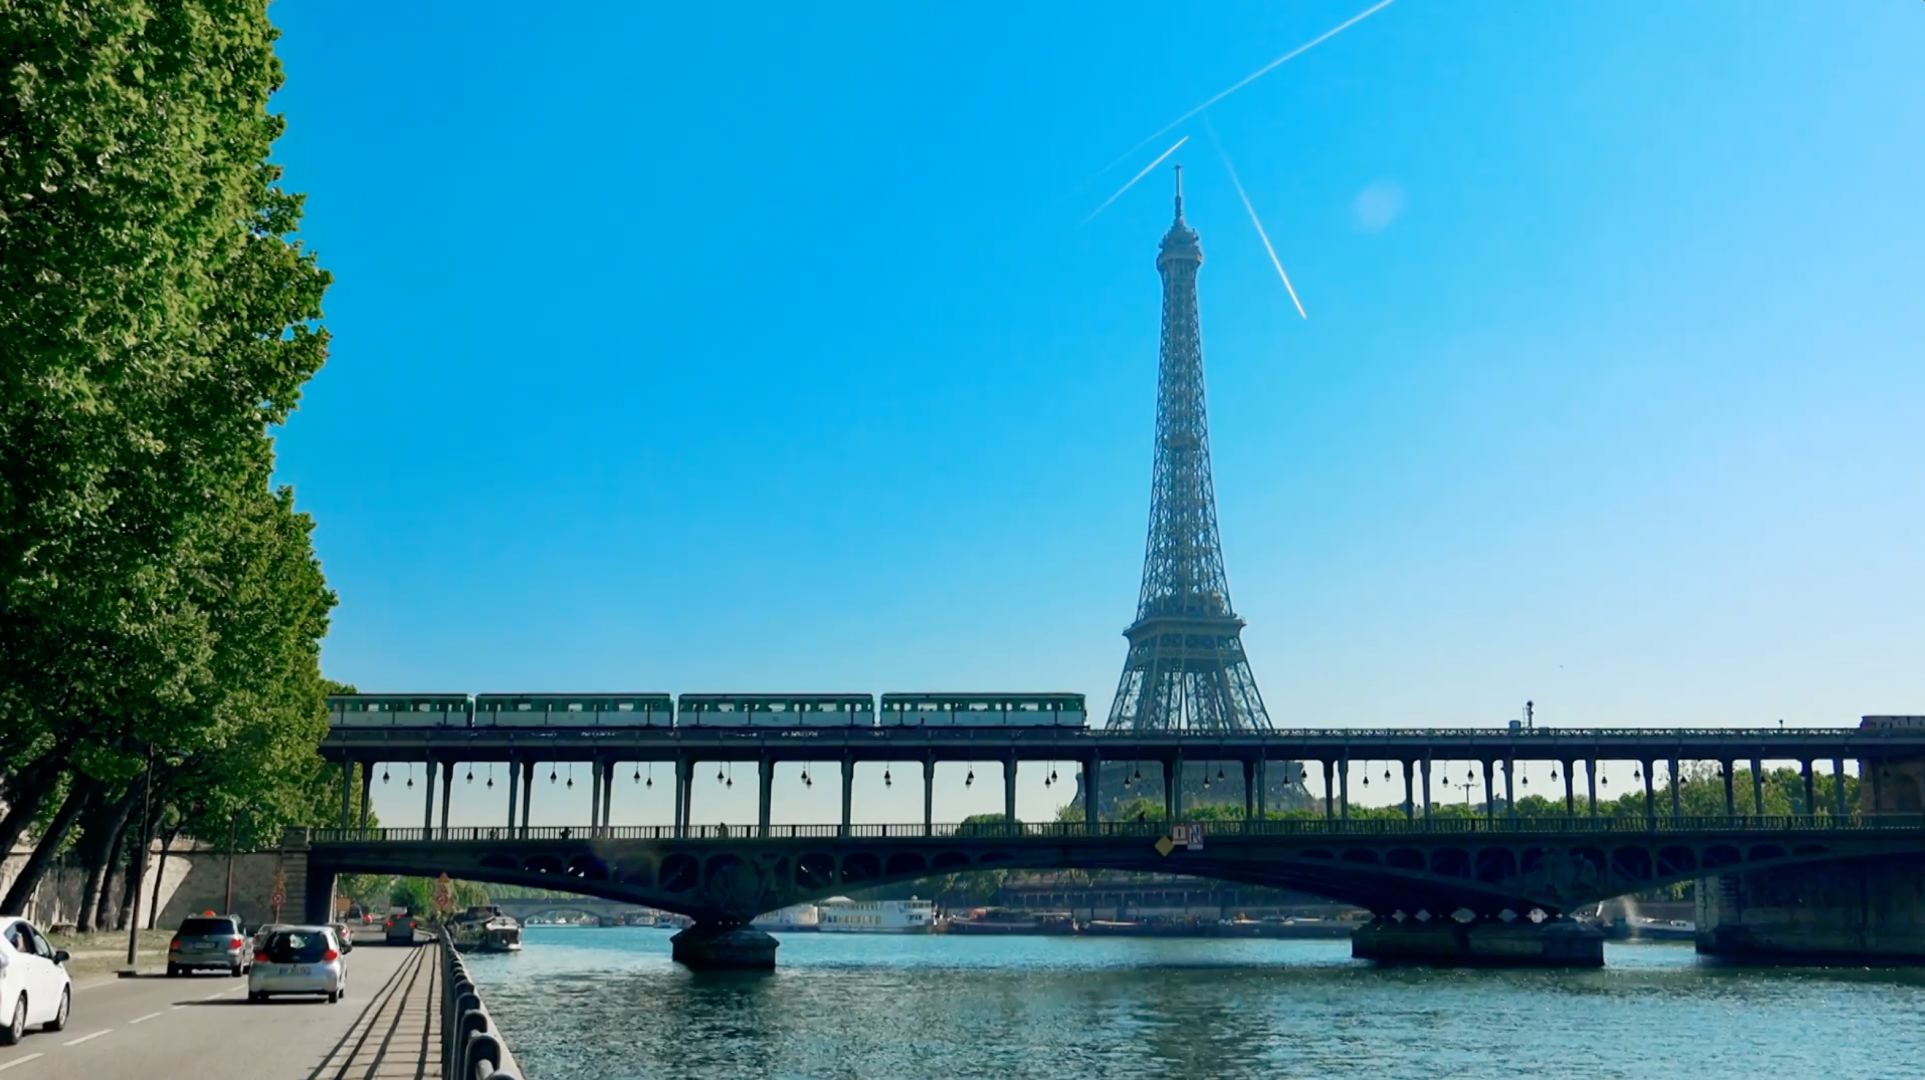 Paris - infrastructures de transport